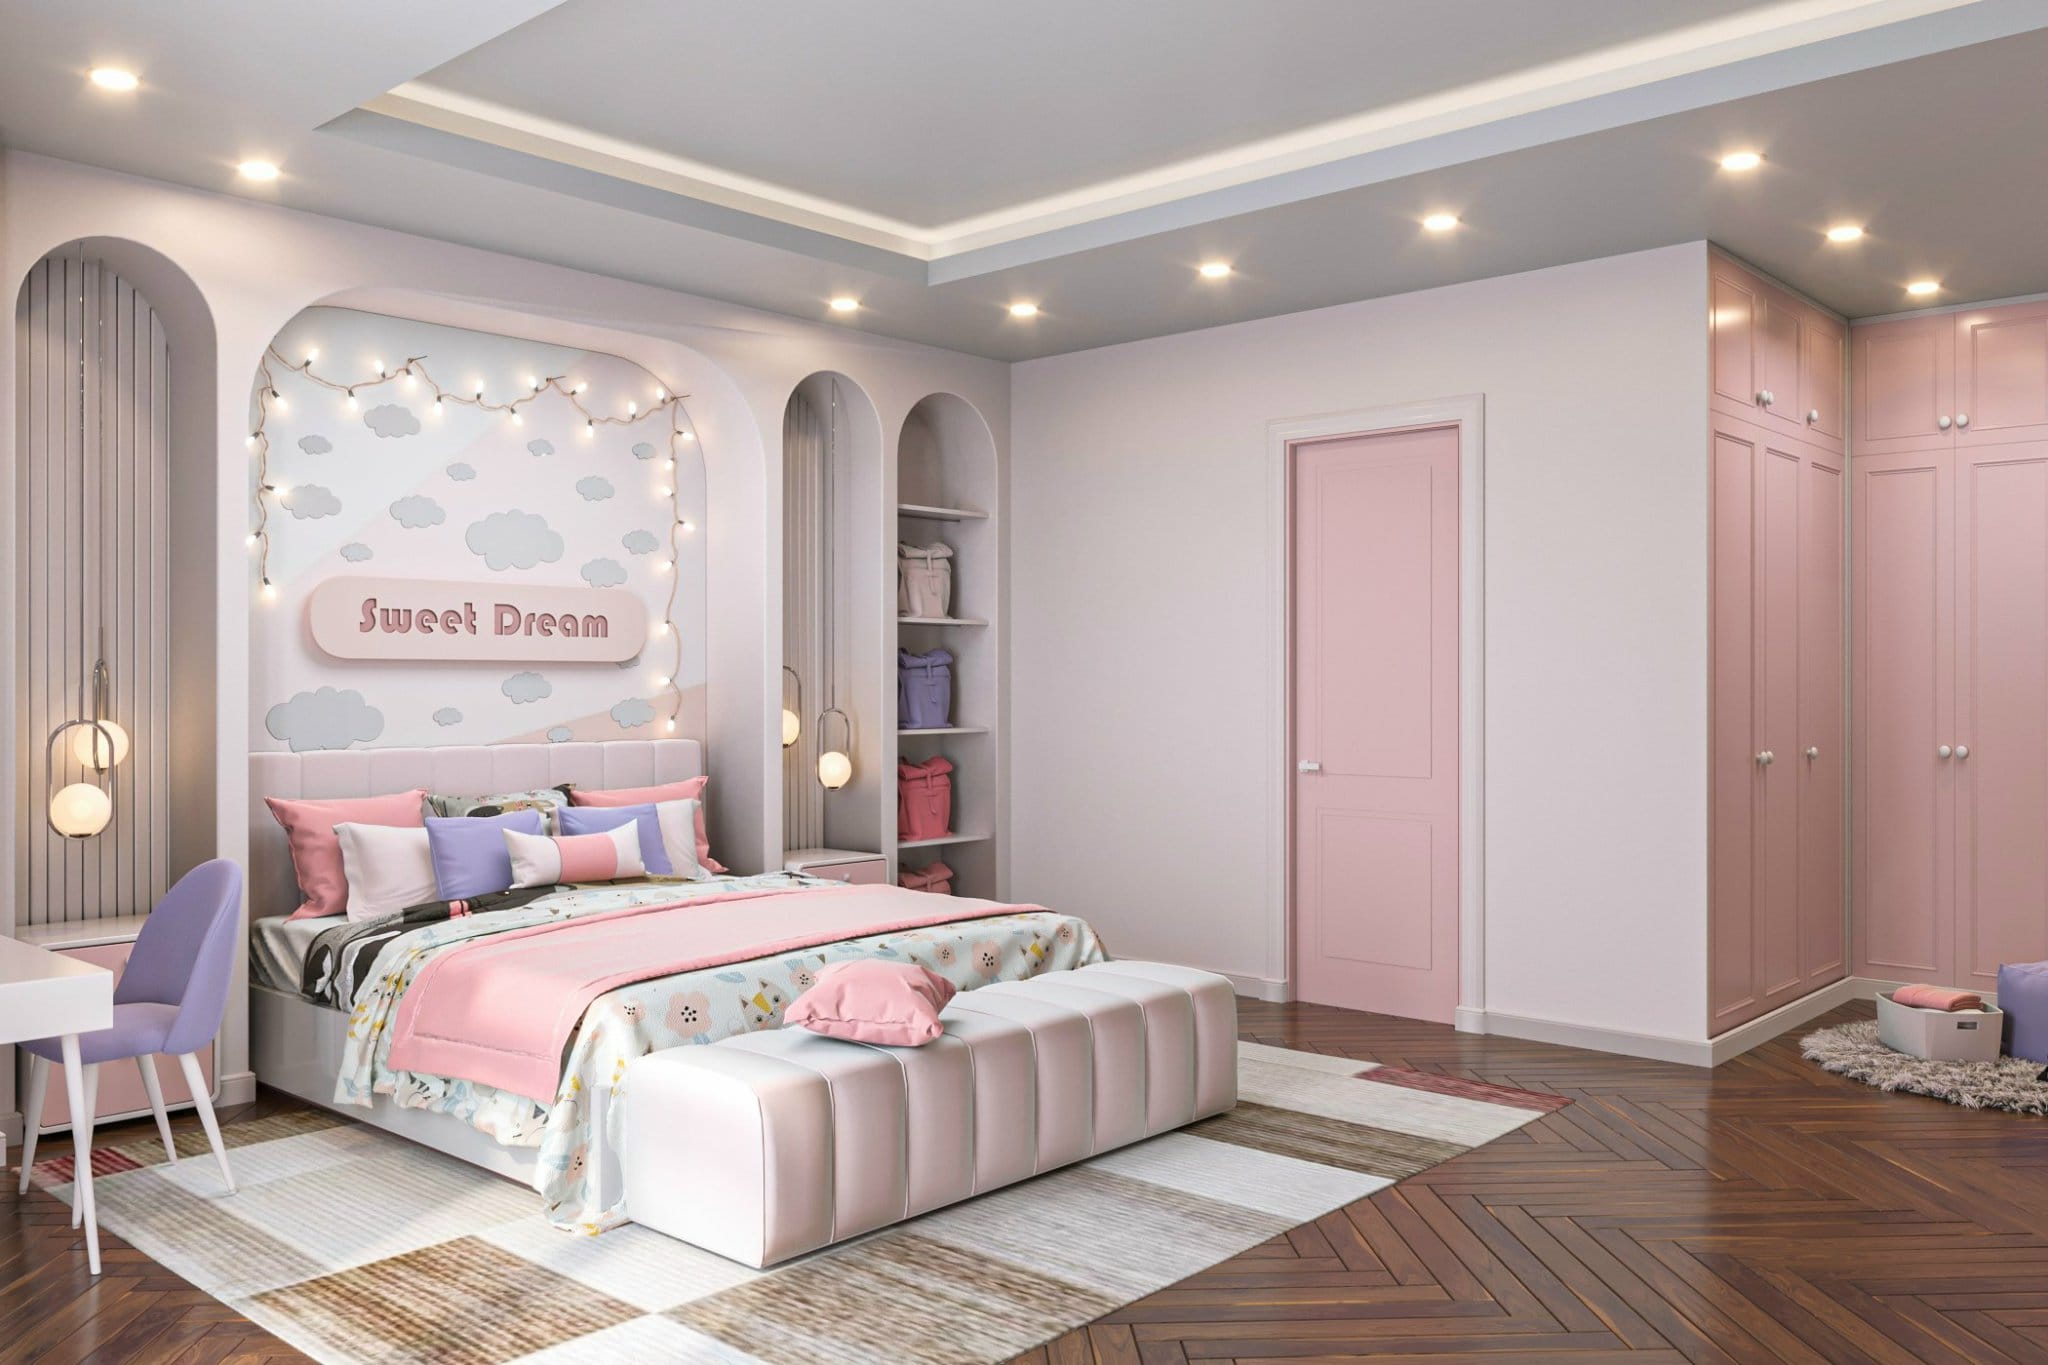 Mẫu phòng ngủ bé gái: Nơi những giấc mơ trở thành hiện thực và cuộc sống tràn đầy sắc màu